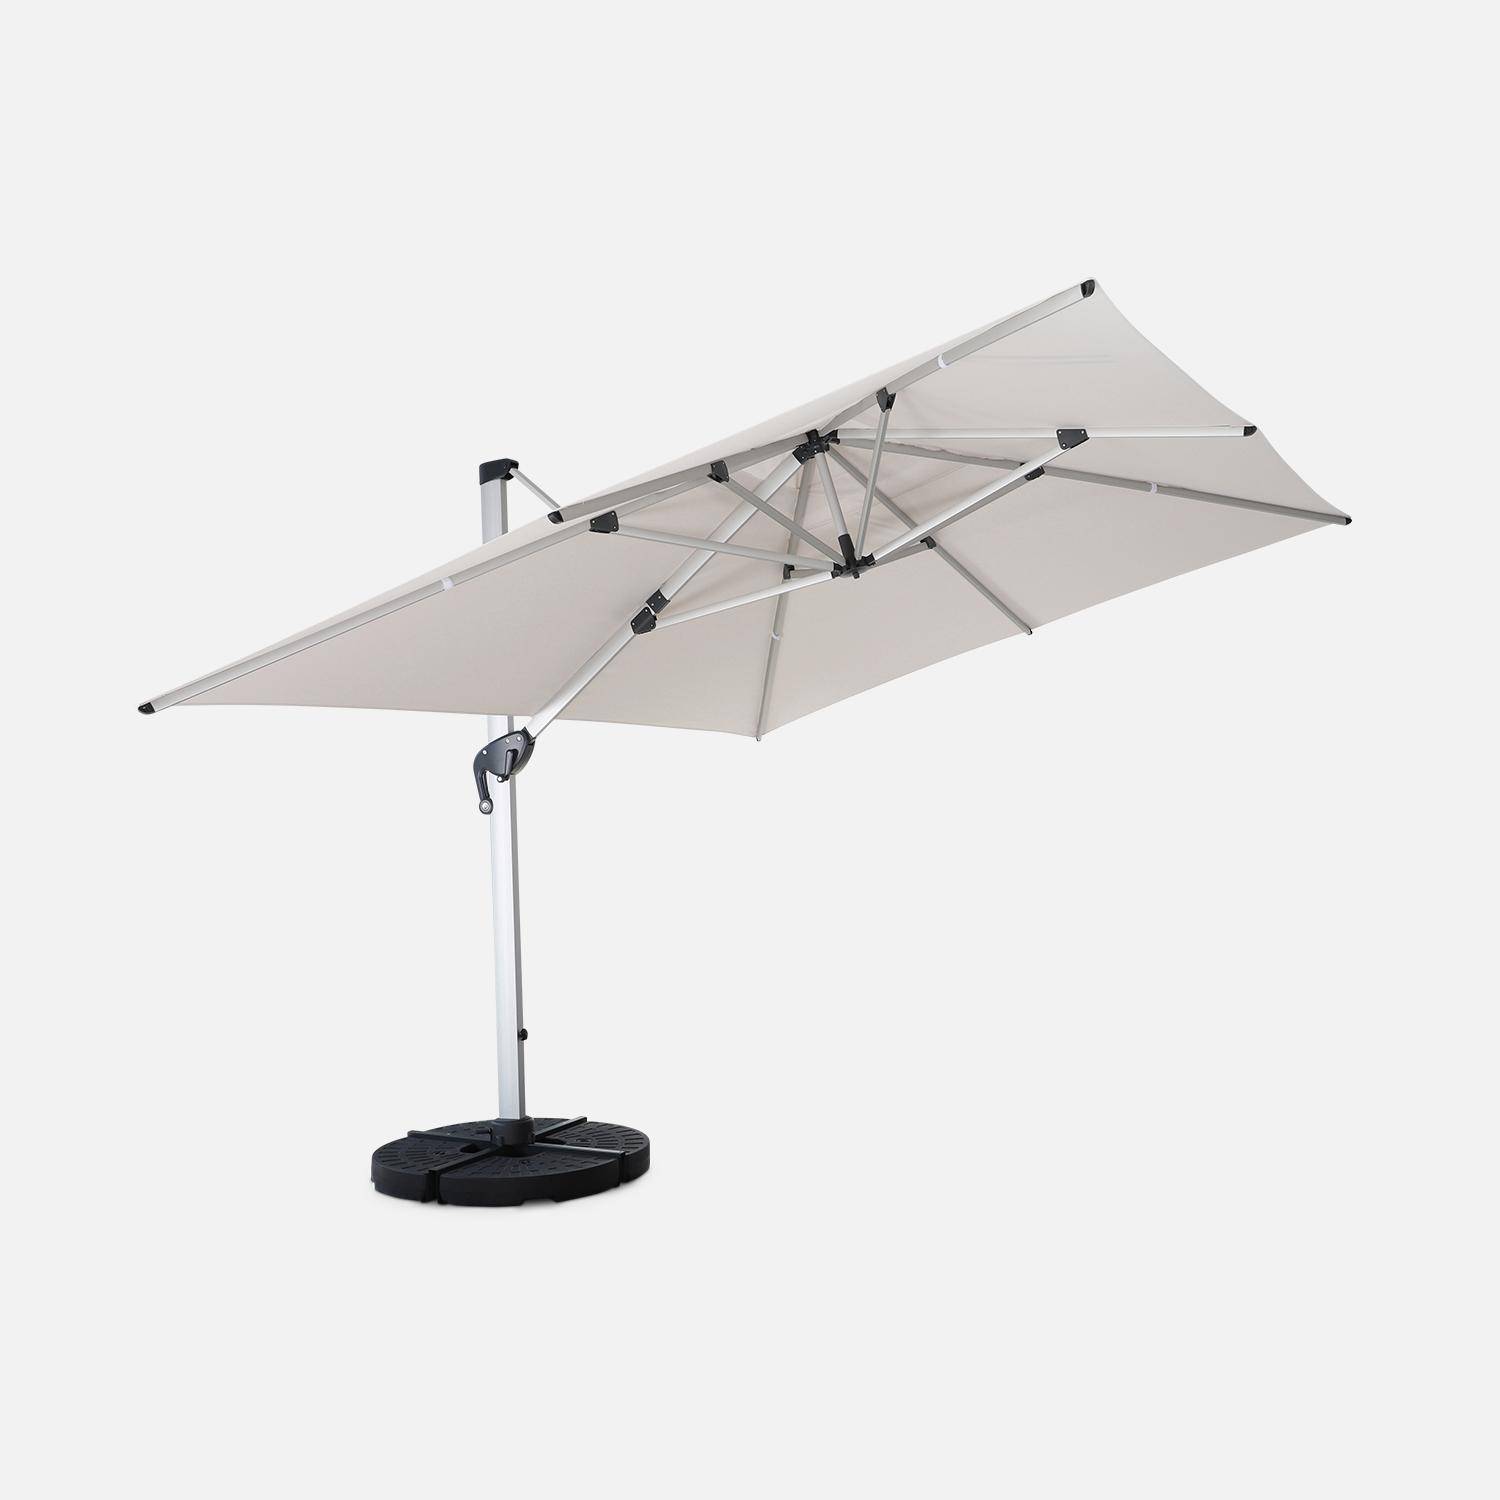 Topkwaliteit parasol, 3x4m, beige polyester doek, geanodiseerd aluminium frame, hoes inbegrepen,sweeek,Photo3